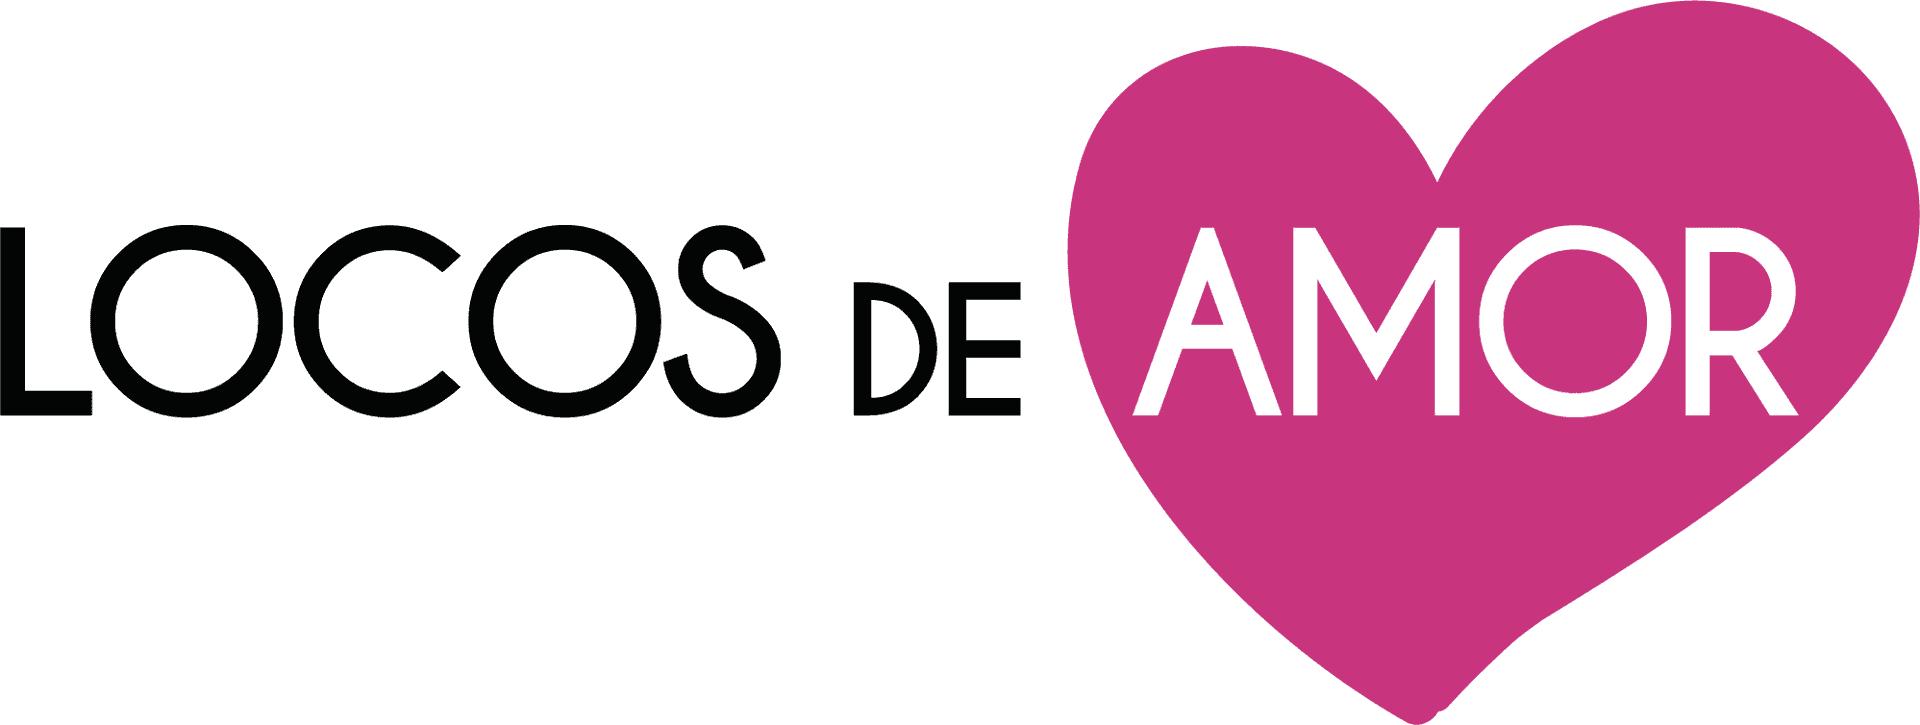 Locosde Amor Logo PNG image